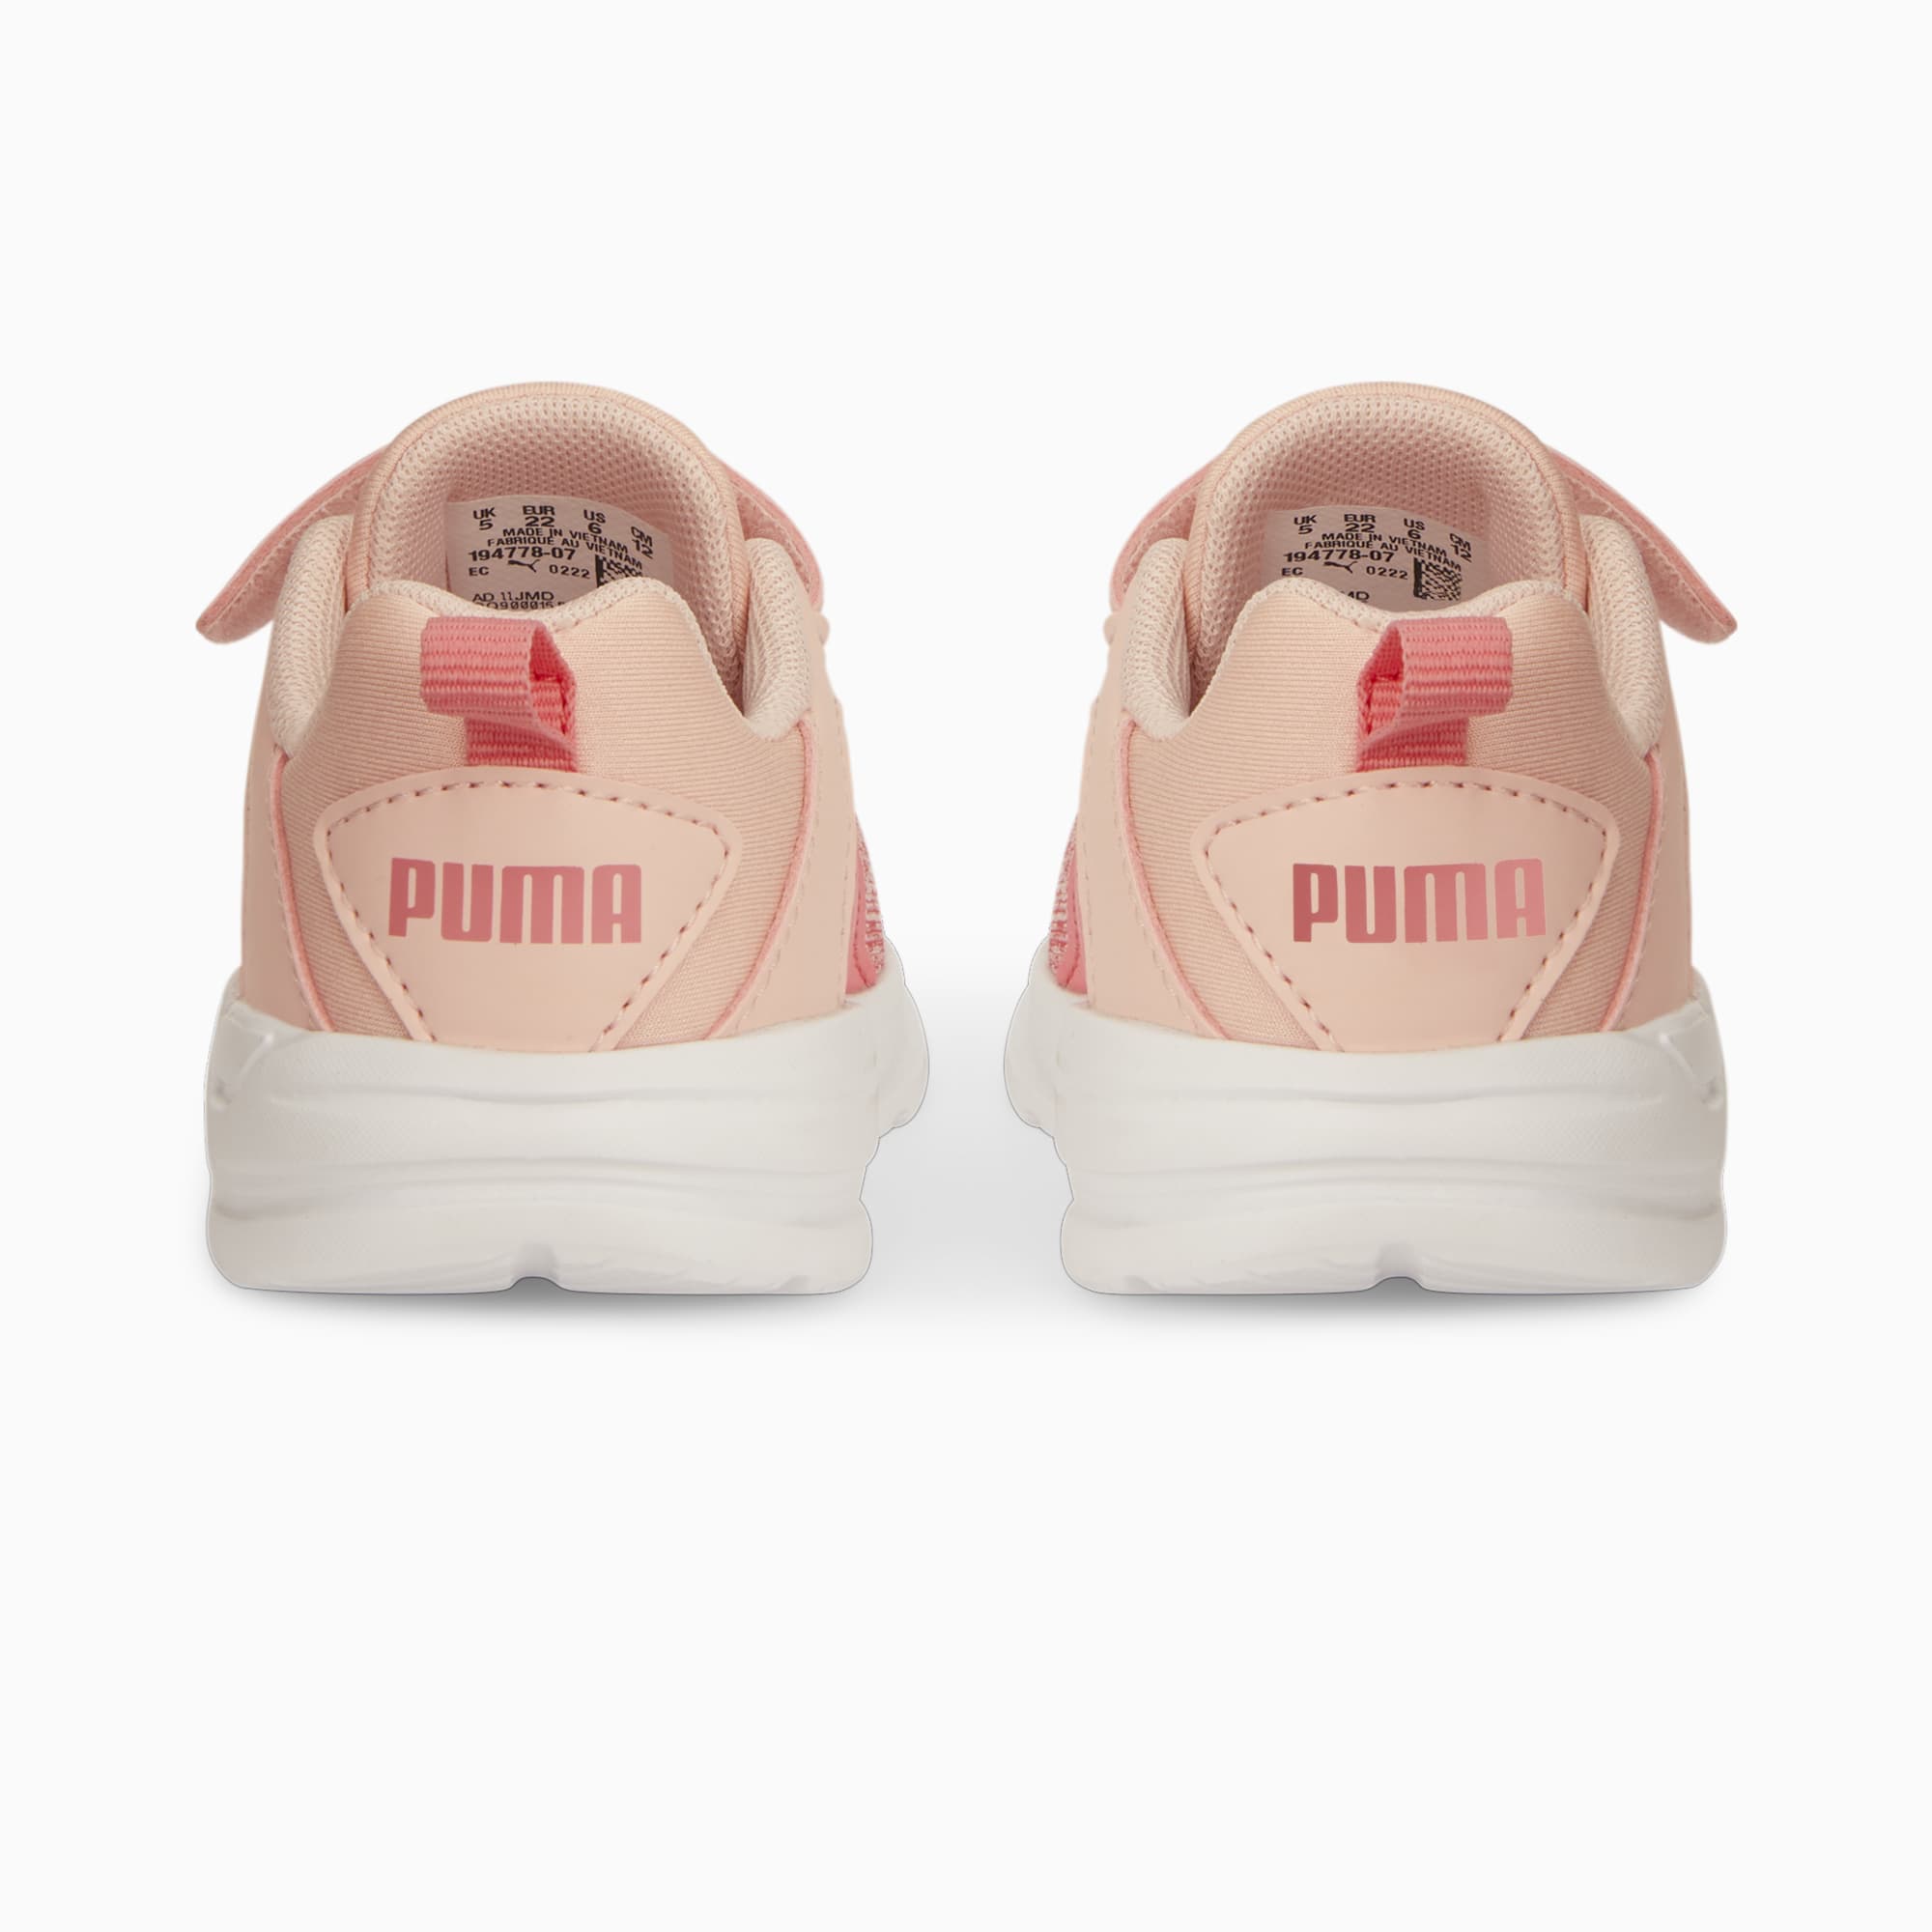 PUMA Comet 2 Alt V Babies' Trainers, Loveable/Rose Dust, Size 19, Shoes